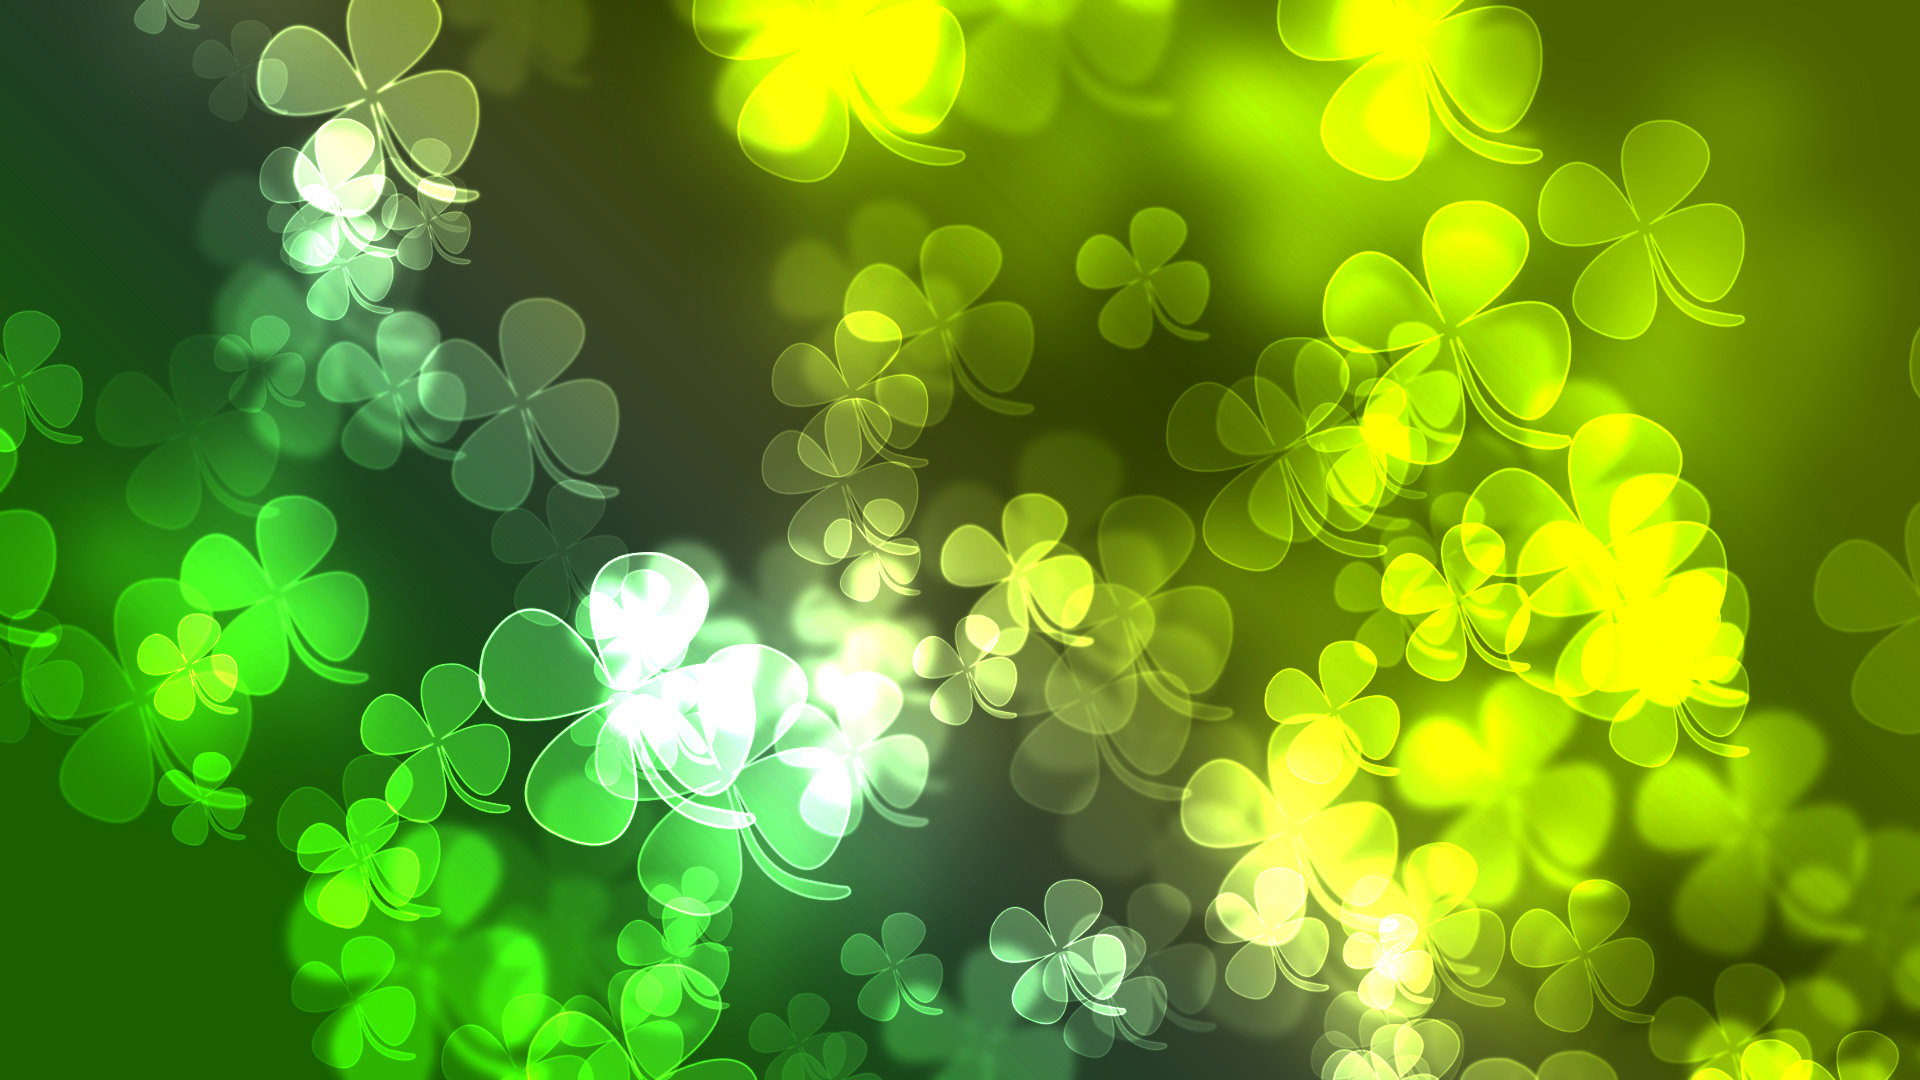 モバイル用の快適な壁紙,緑,葉,光,黄,パターン